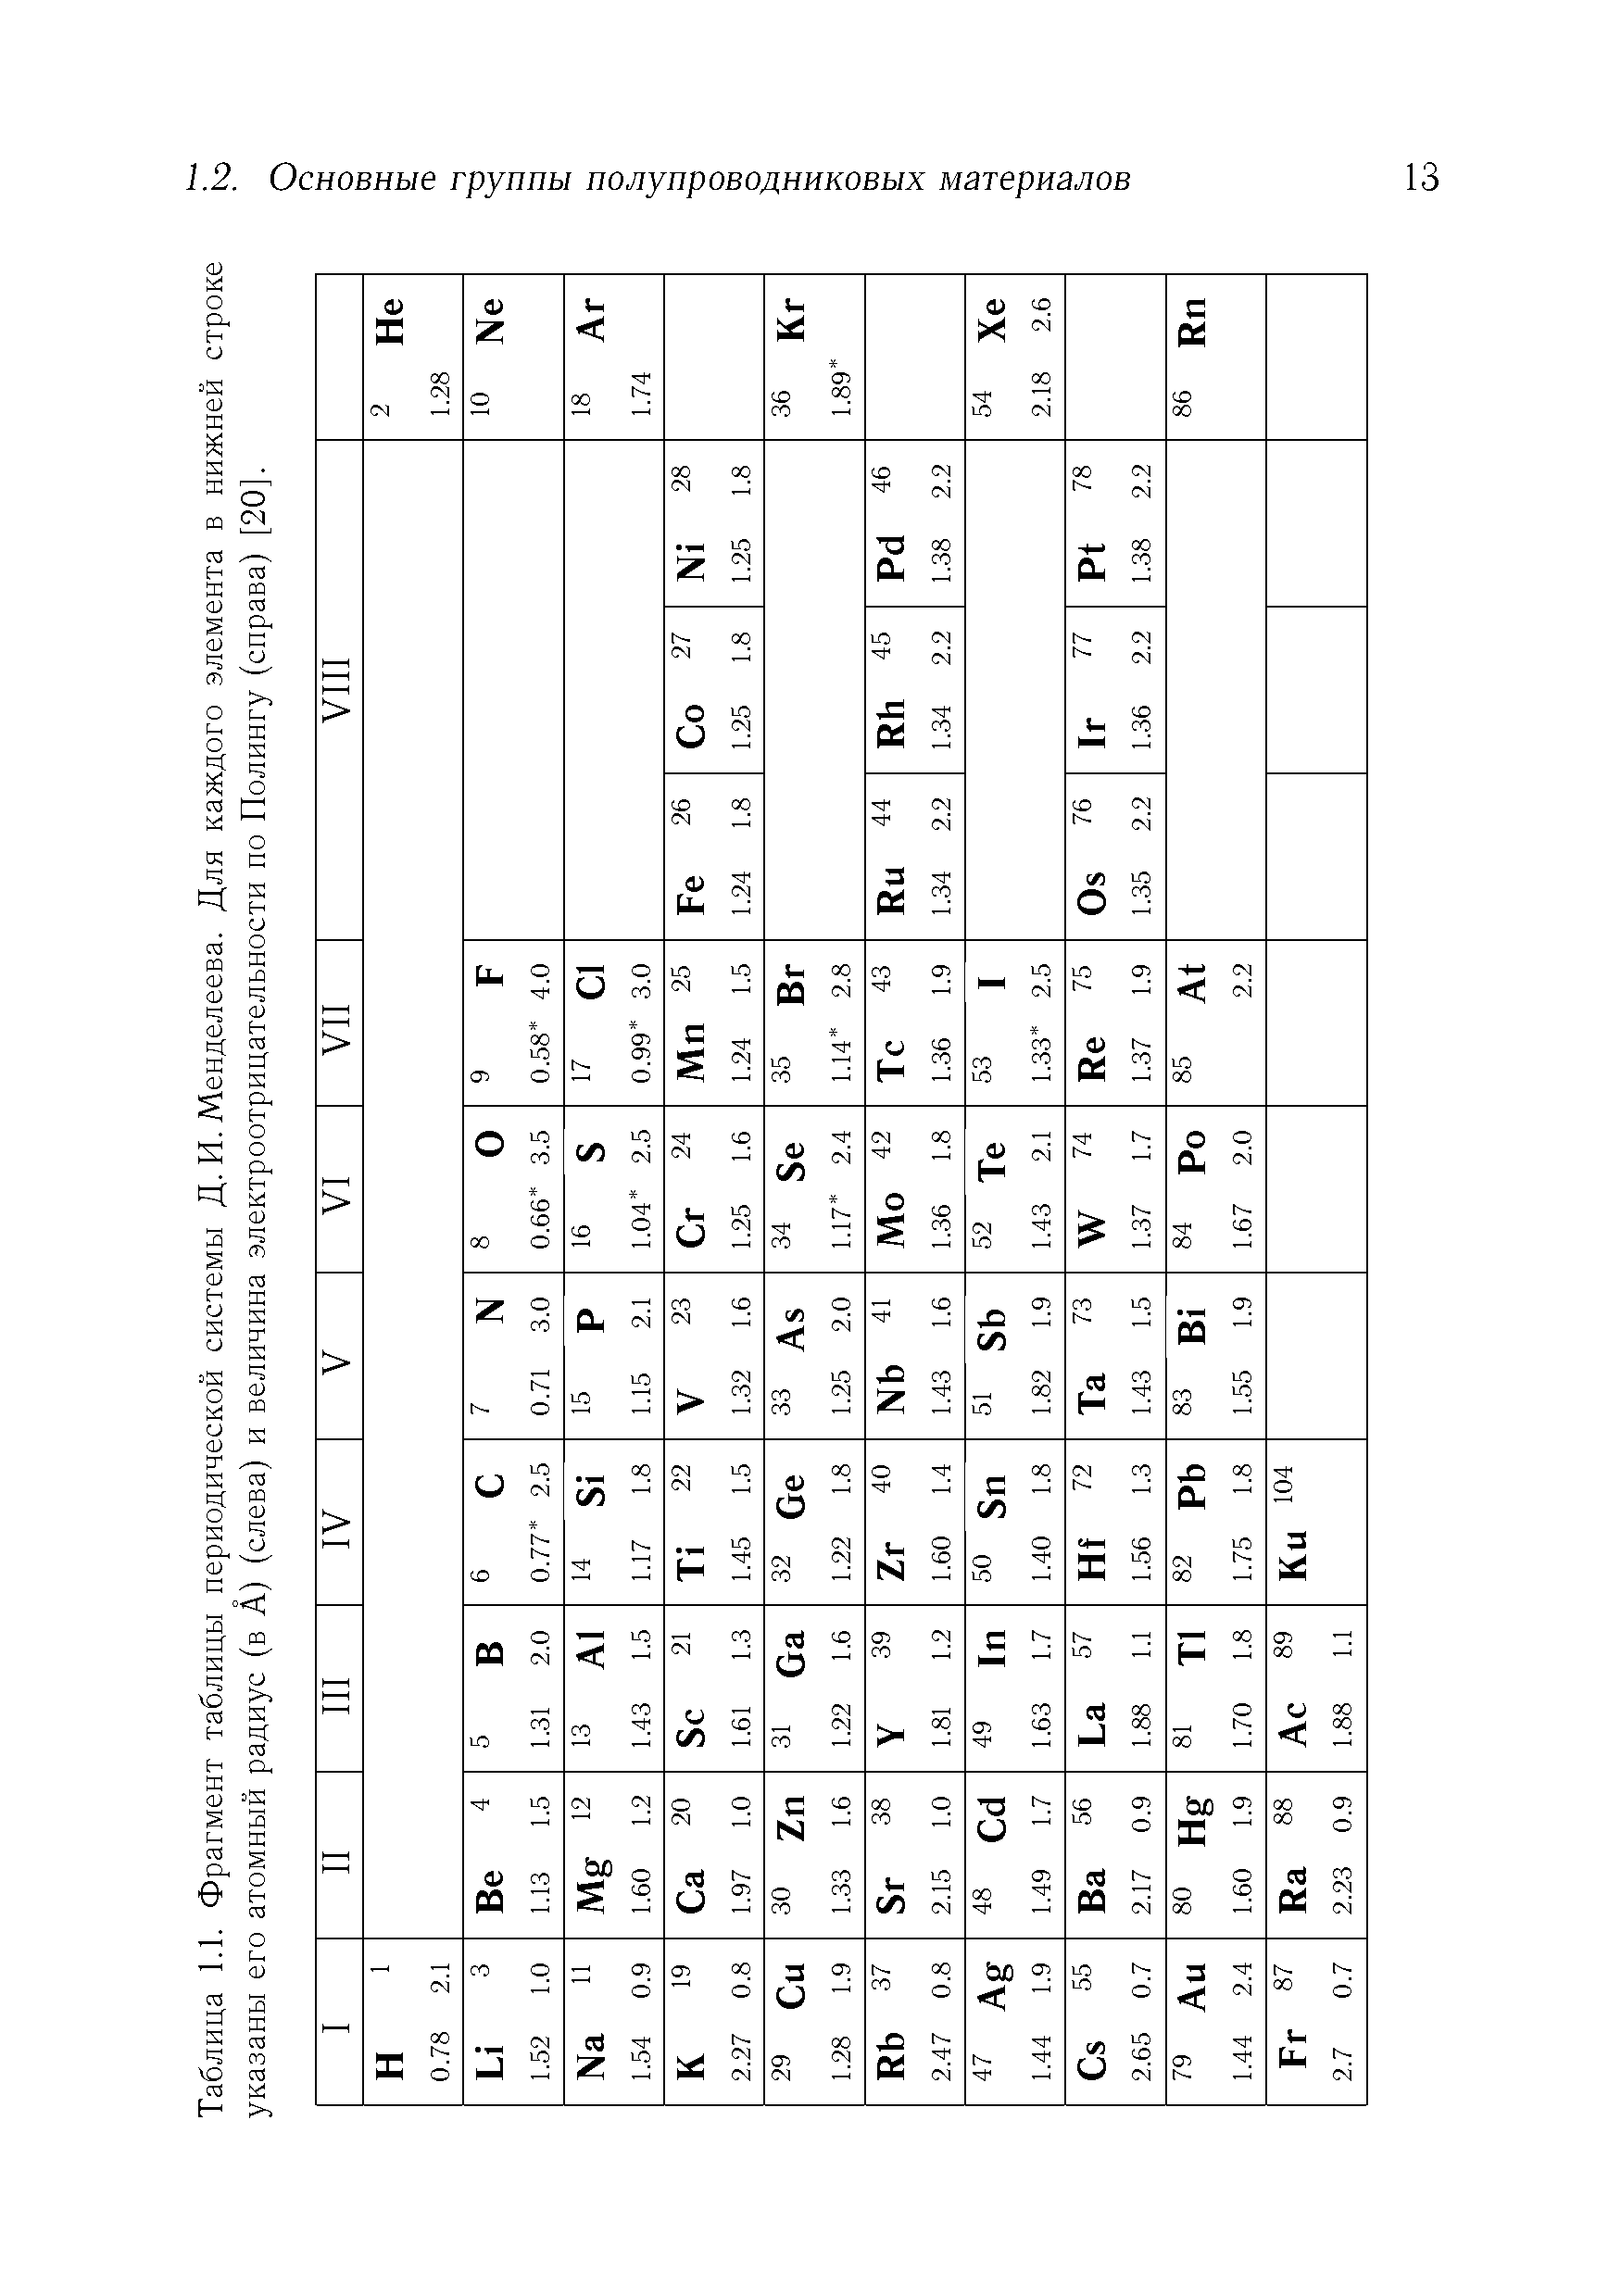 Таблица 1.1. Фрагмент таблицы периодической системы Д. И. Менделеева. Для каждого элемента в нижней строке указаны его атомный радиус (в А) (слева) и величина электроотрицательности по Полингу (справа) [20].
